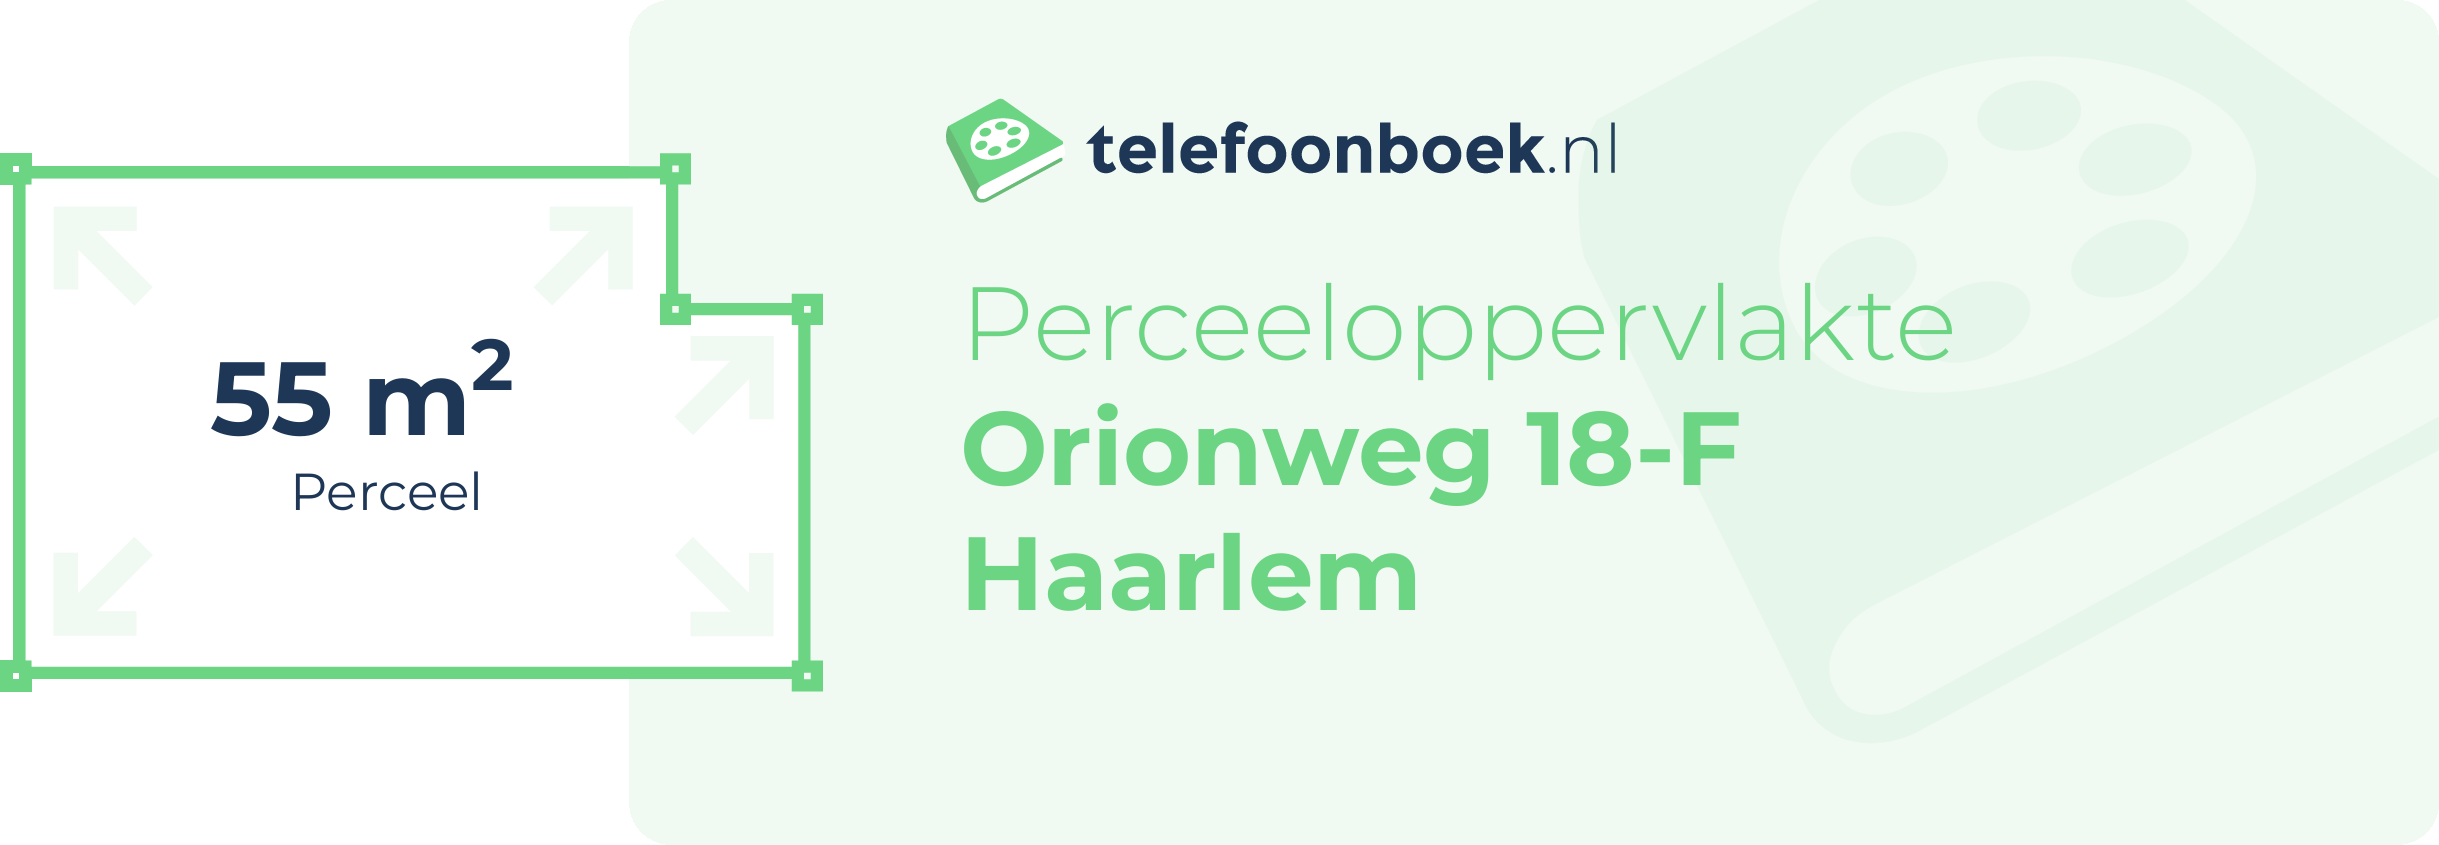 Perceeloppervlakte Orionweg 18-F Haarlem